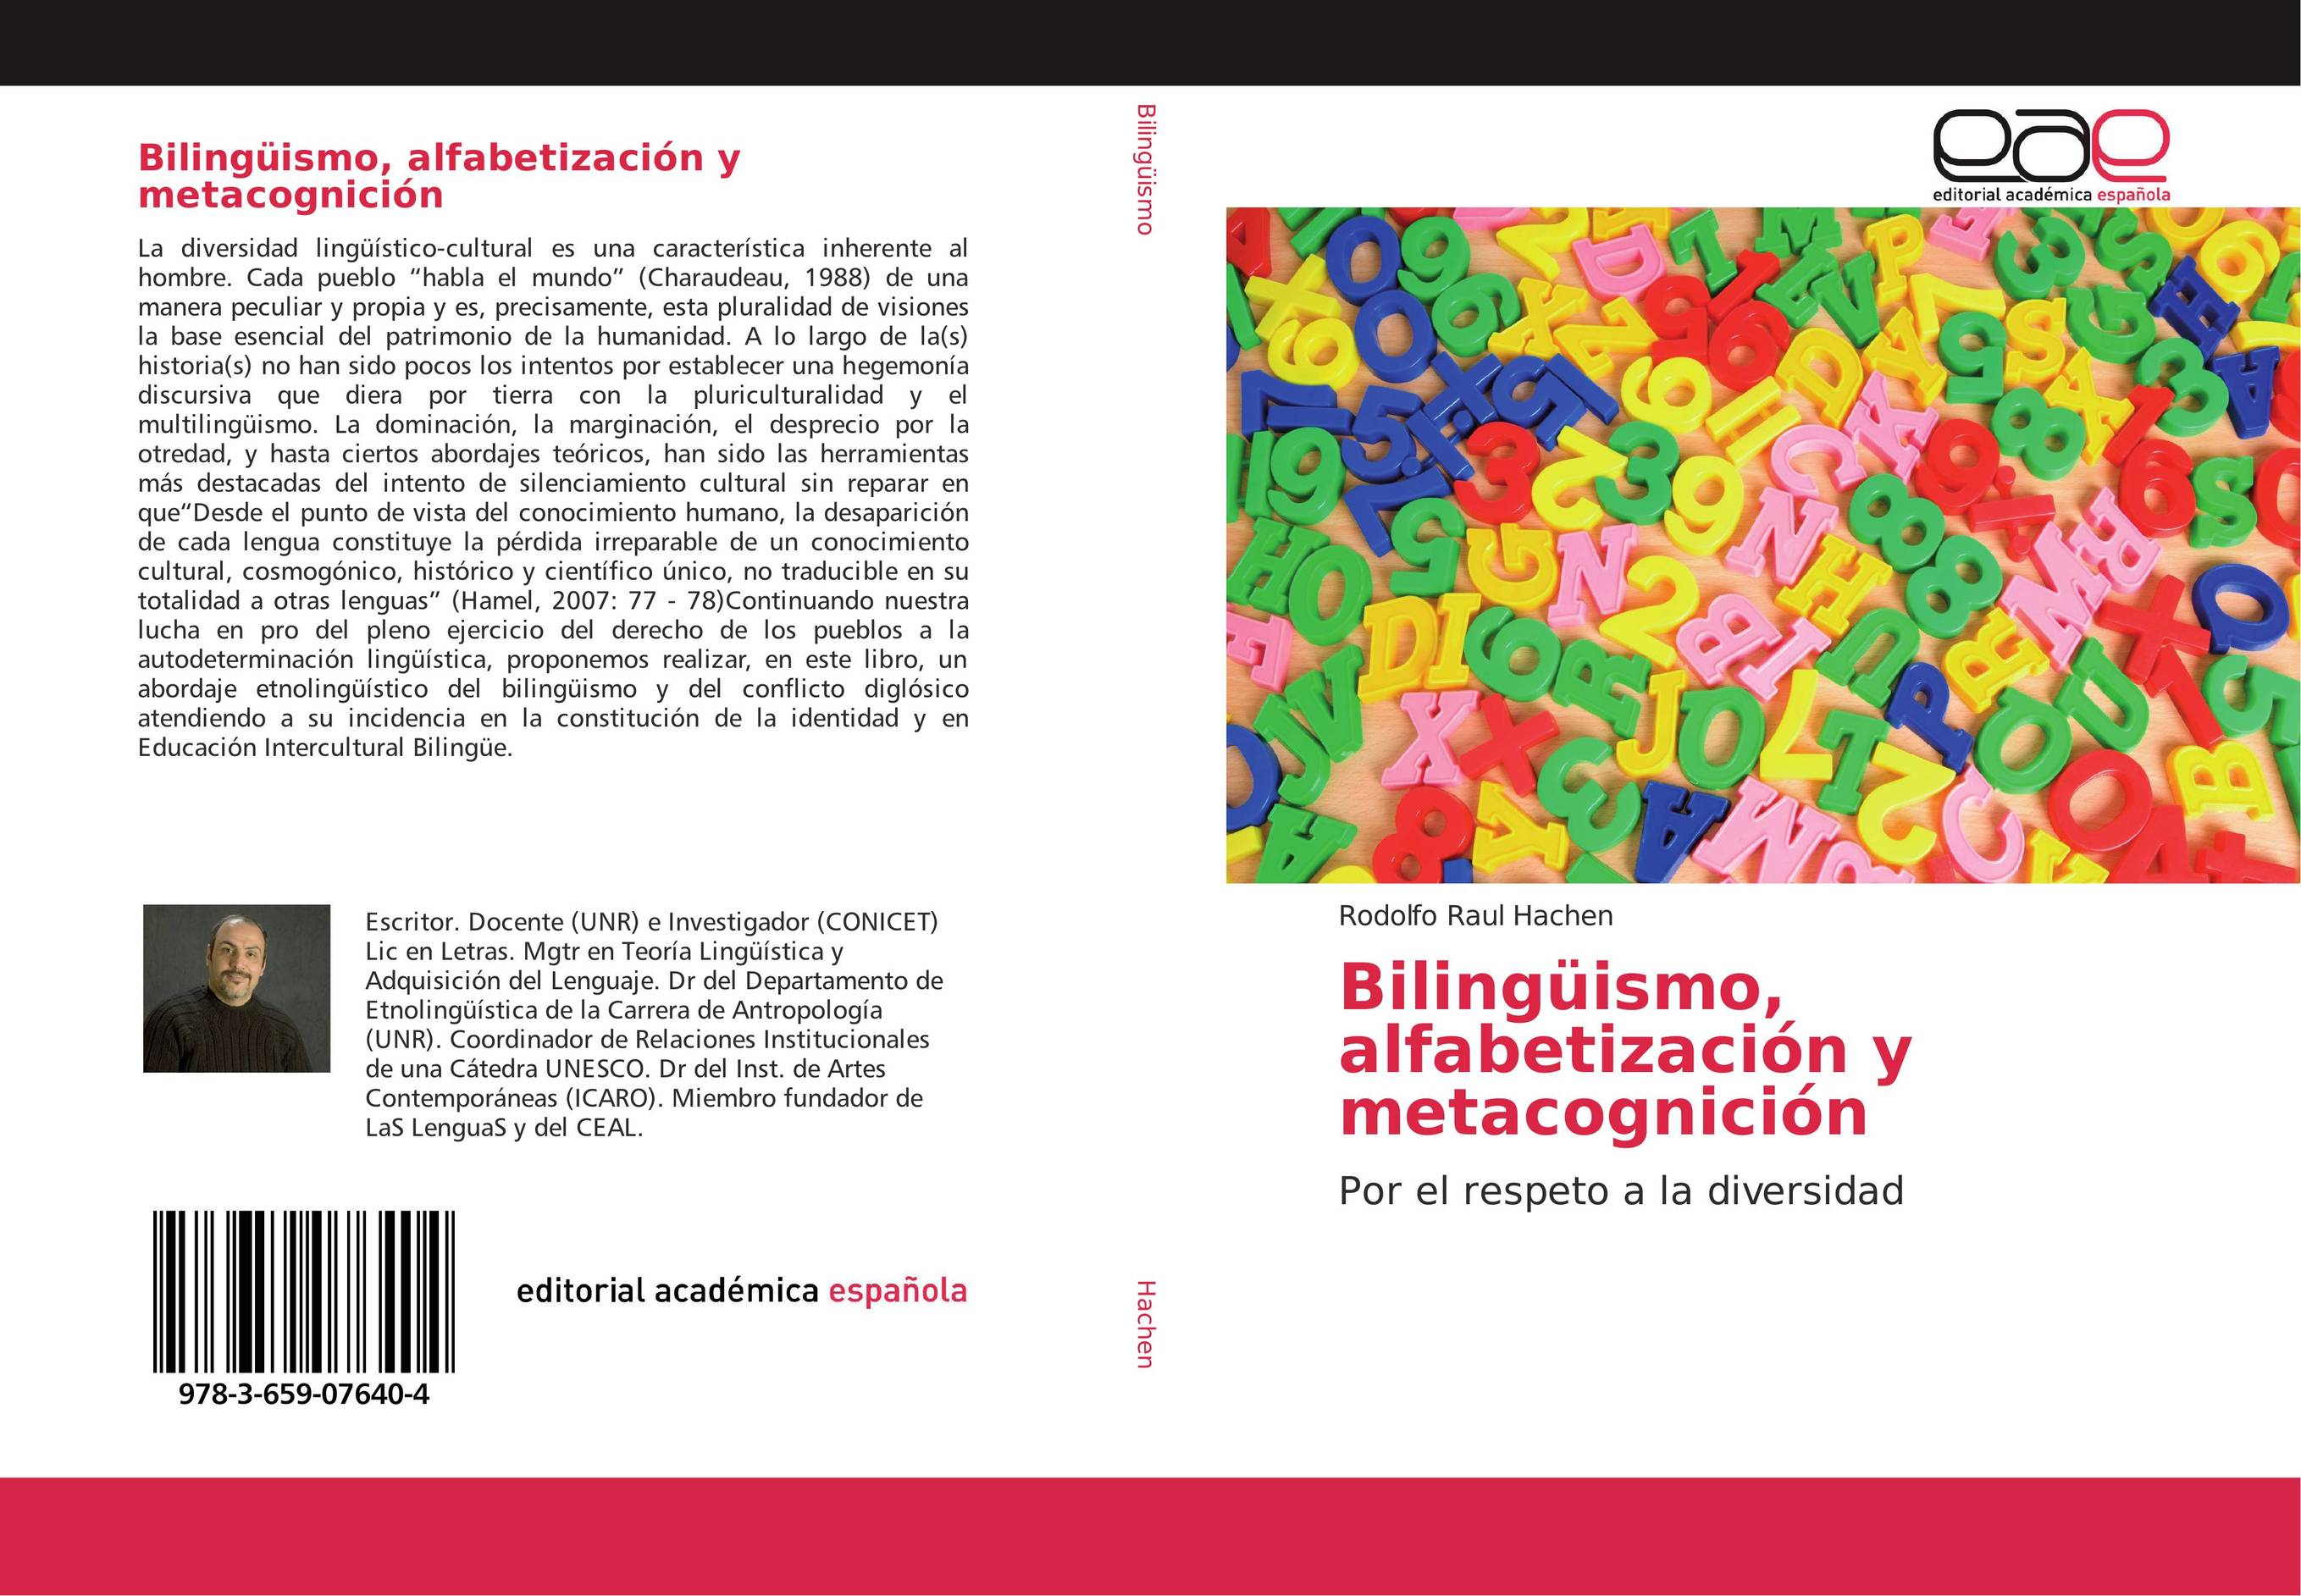 Bilingüismo, alfabetización y metacognición